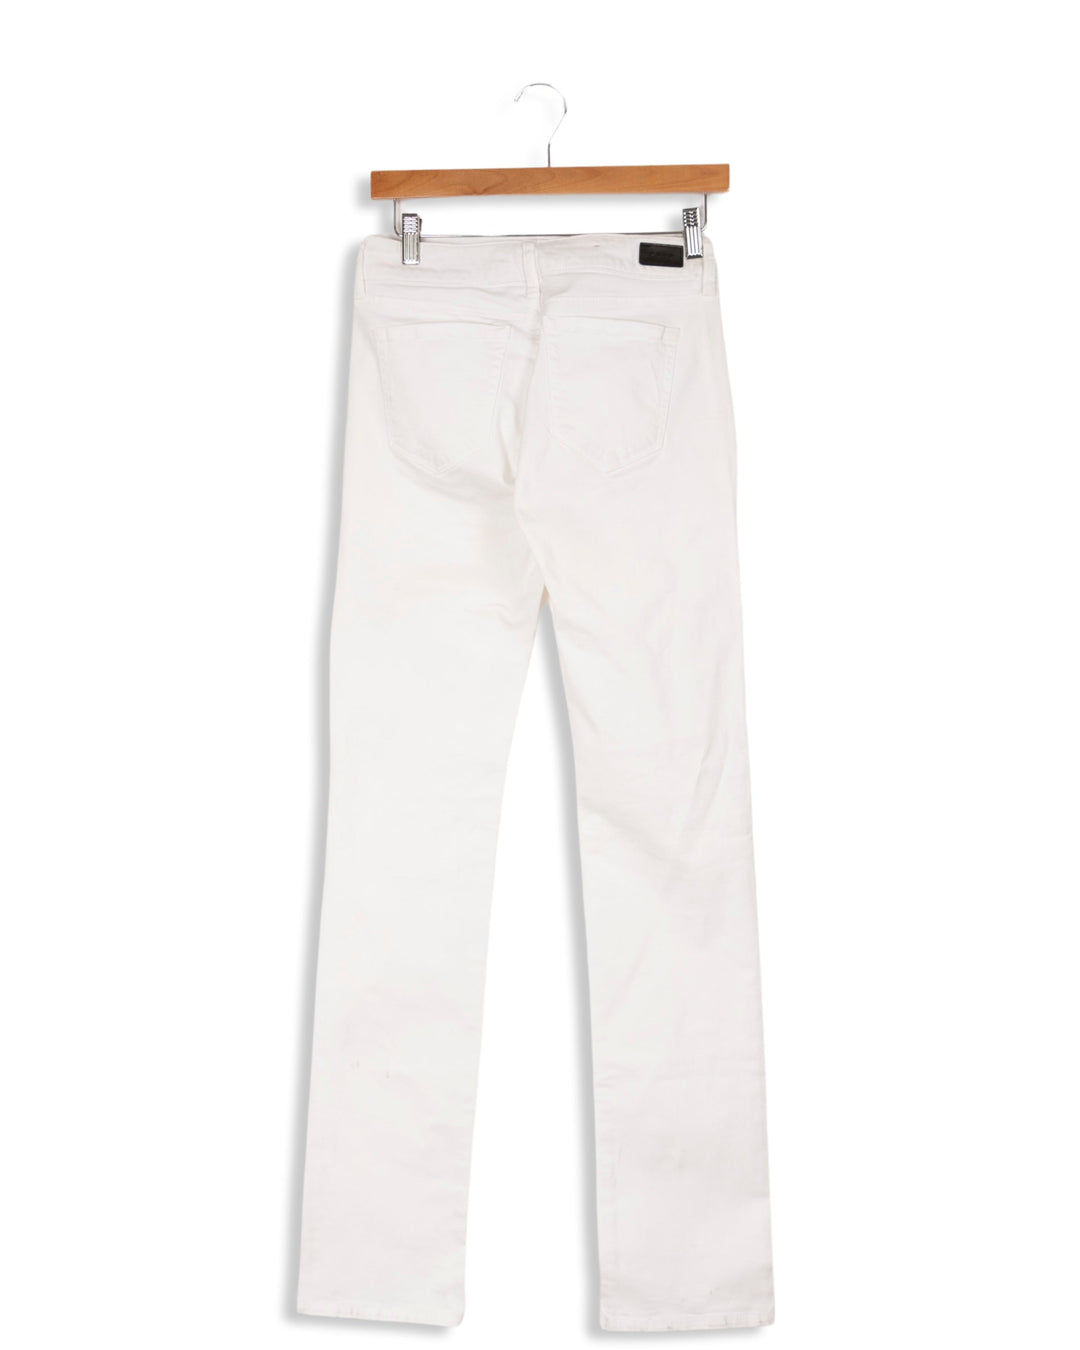 White pants - 36